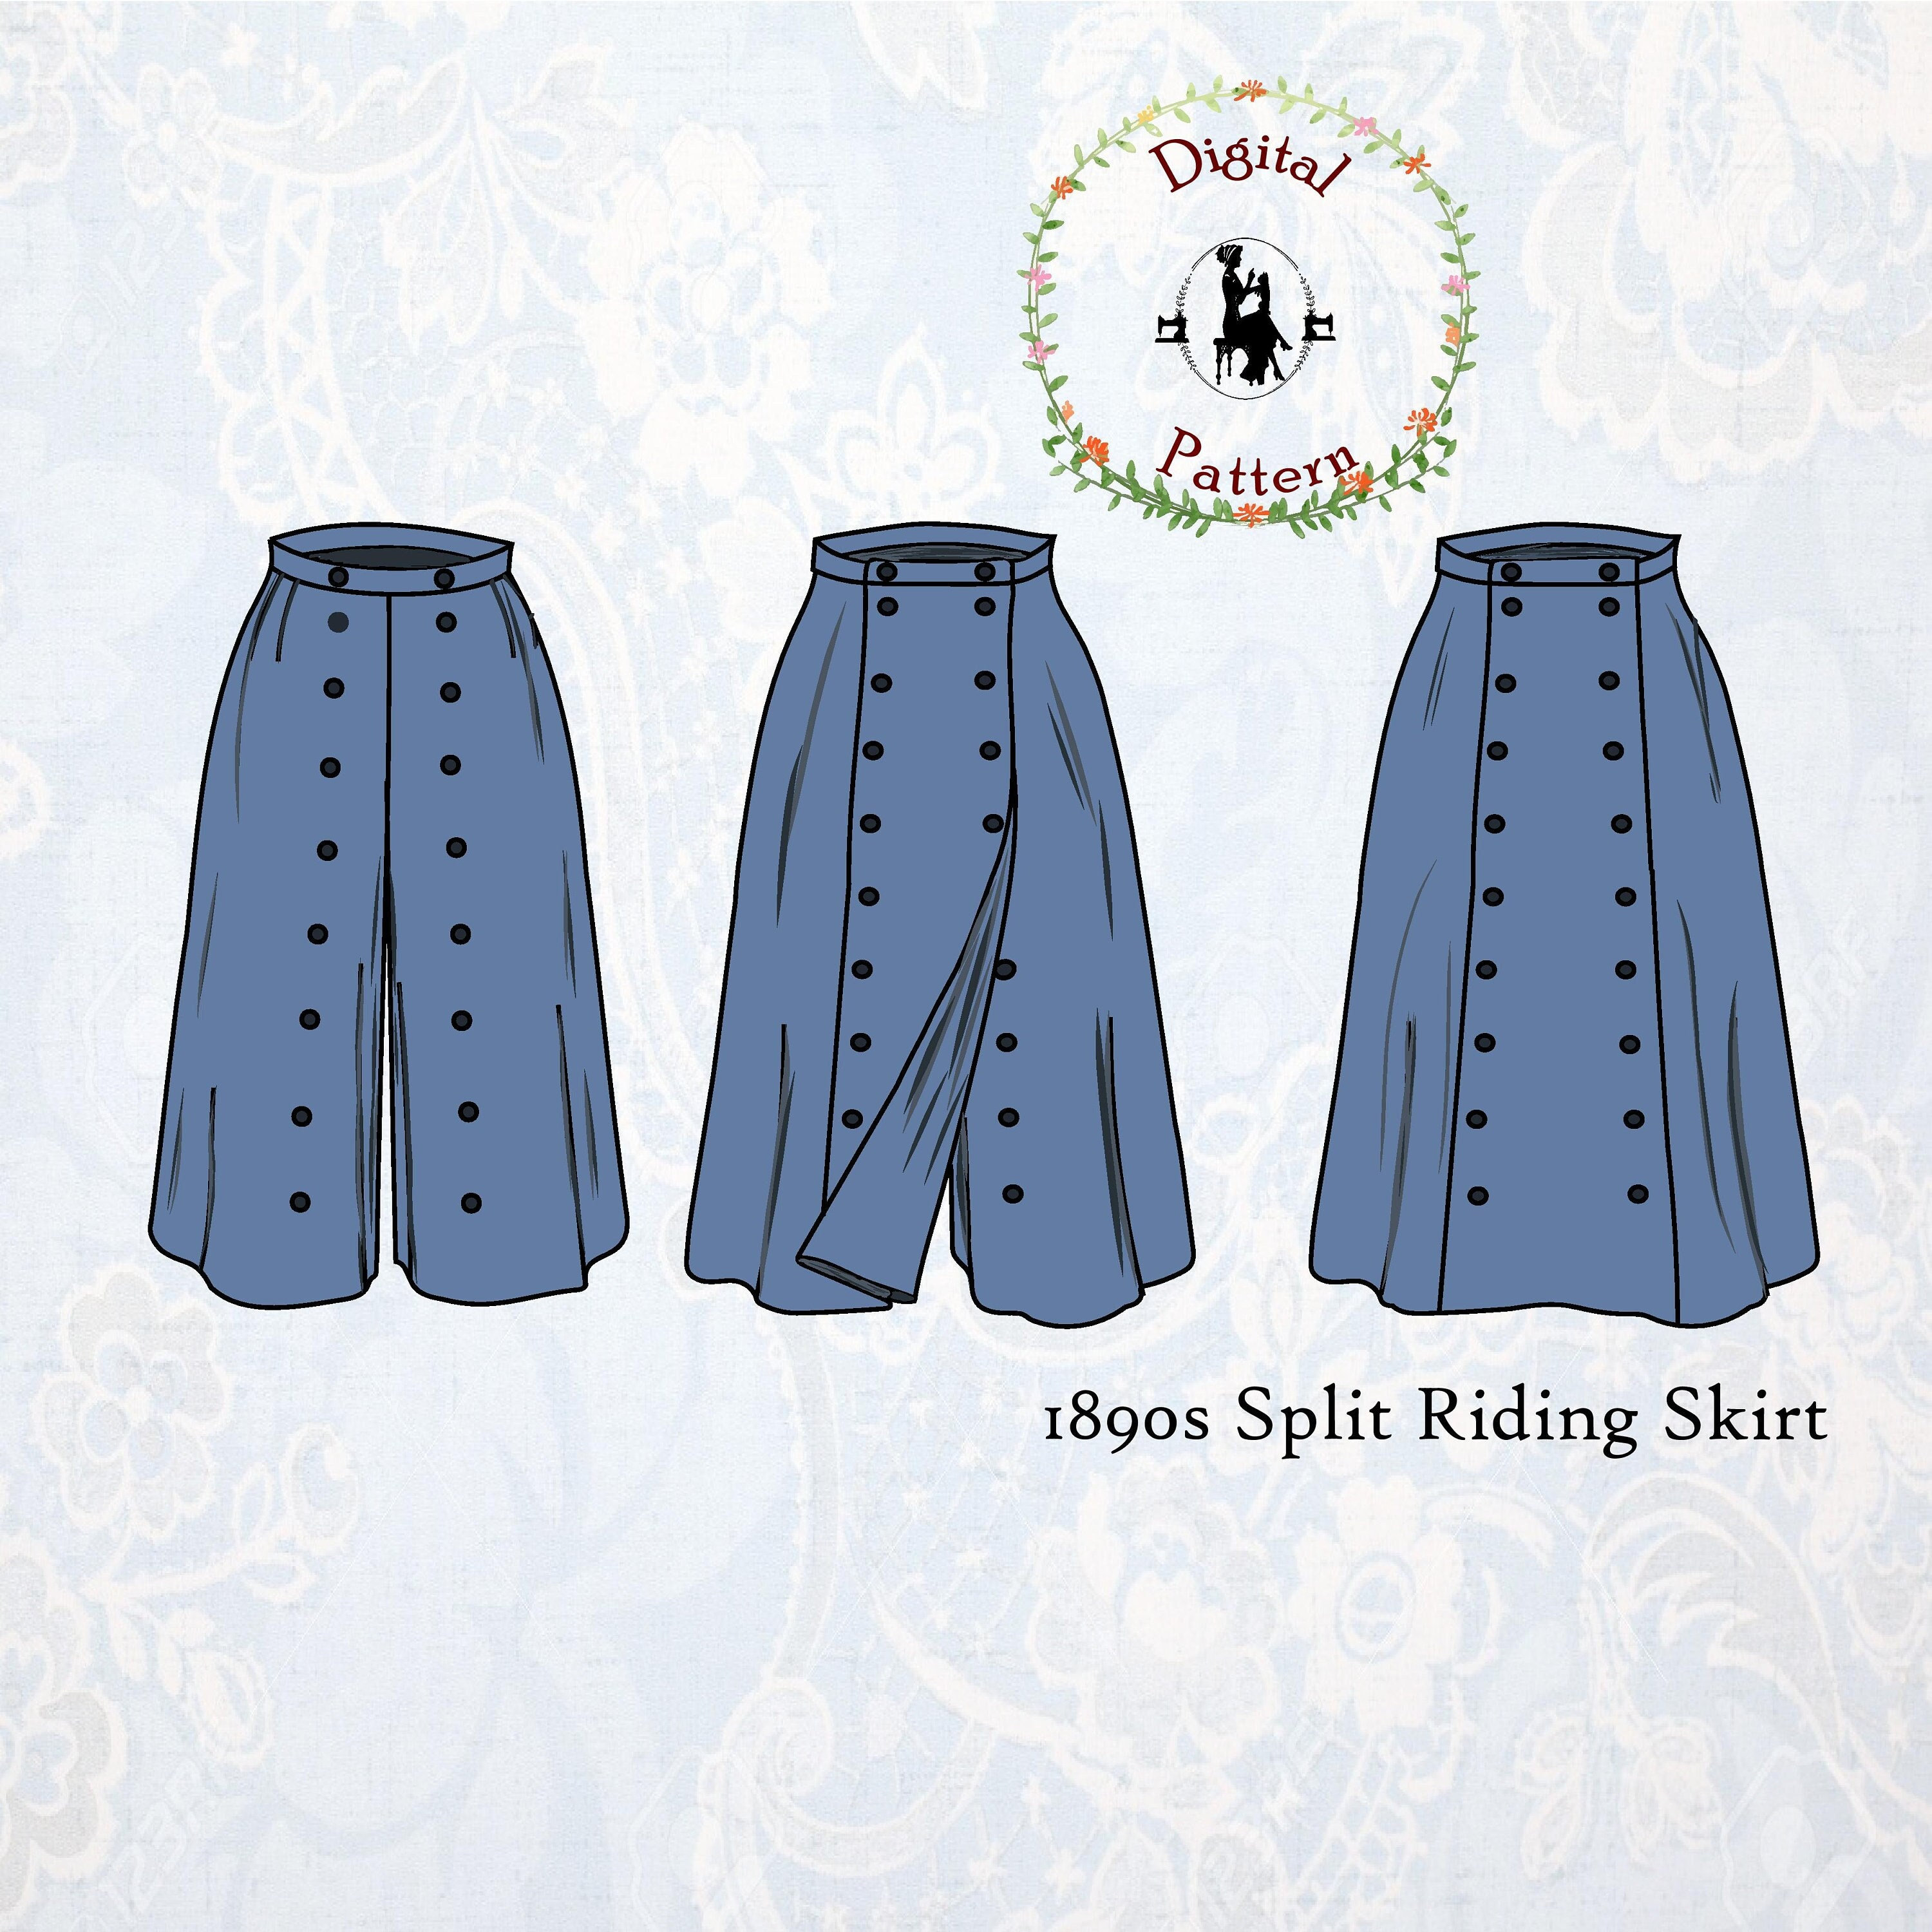 Riding Skirt Or Divided Skirt Scully | lupon.gov.ph